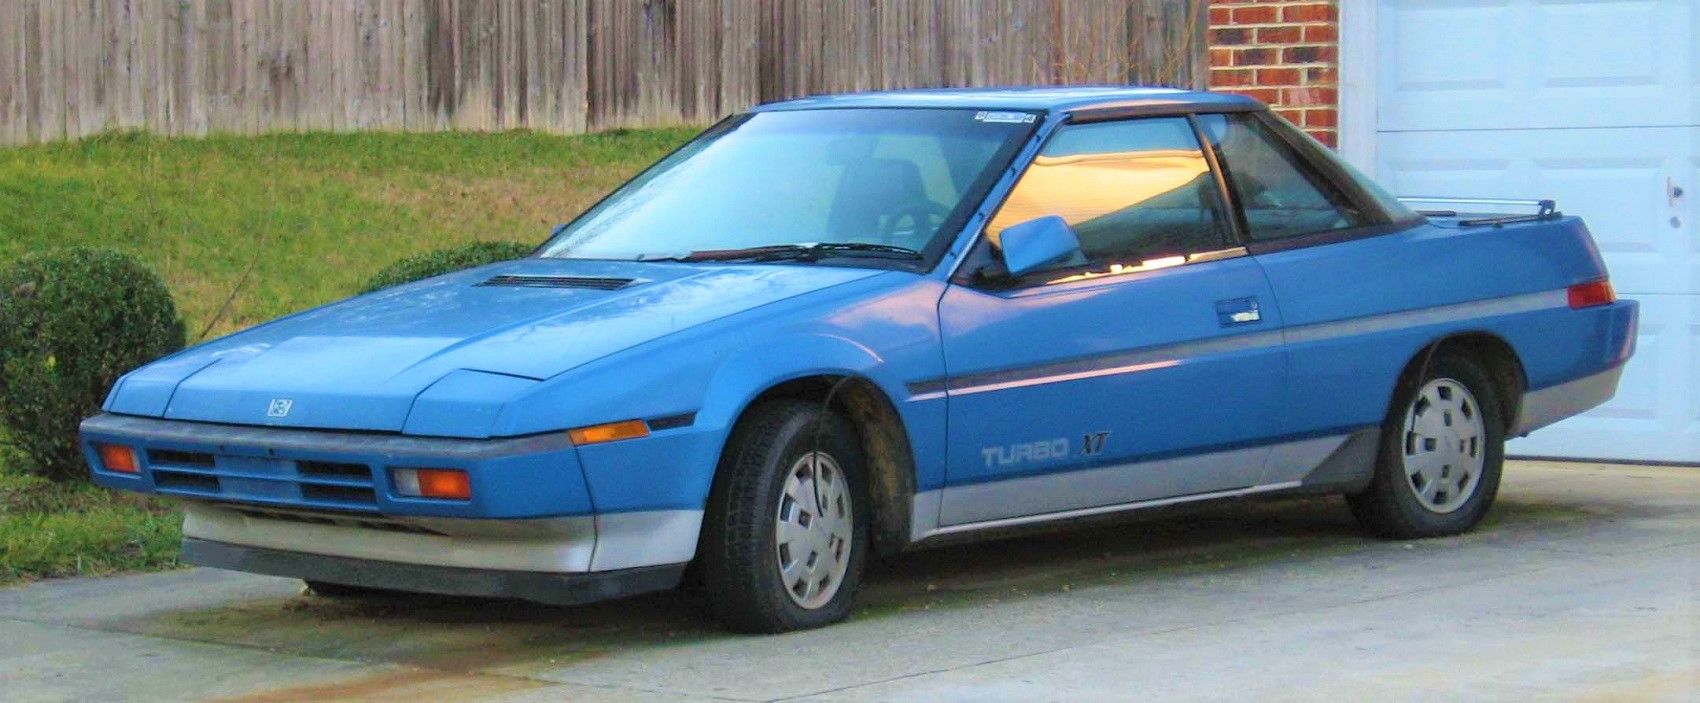 Subaru XT - Front